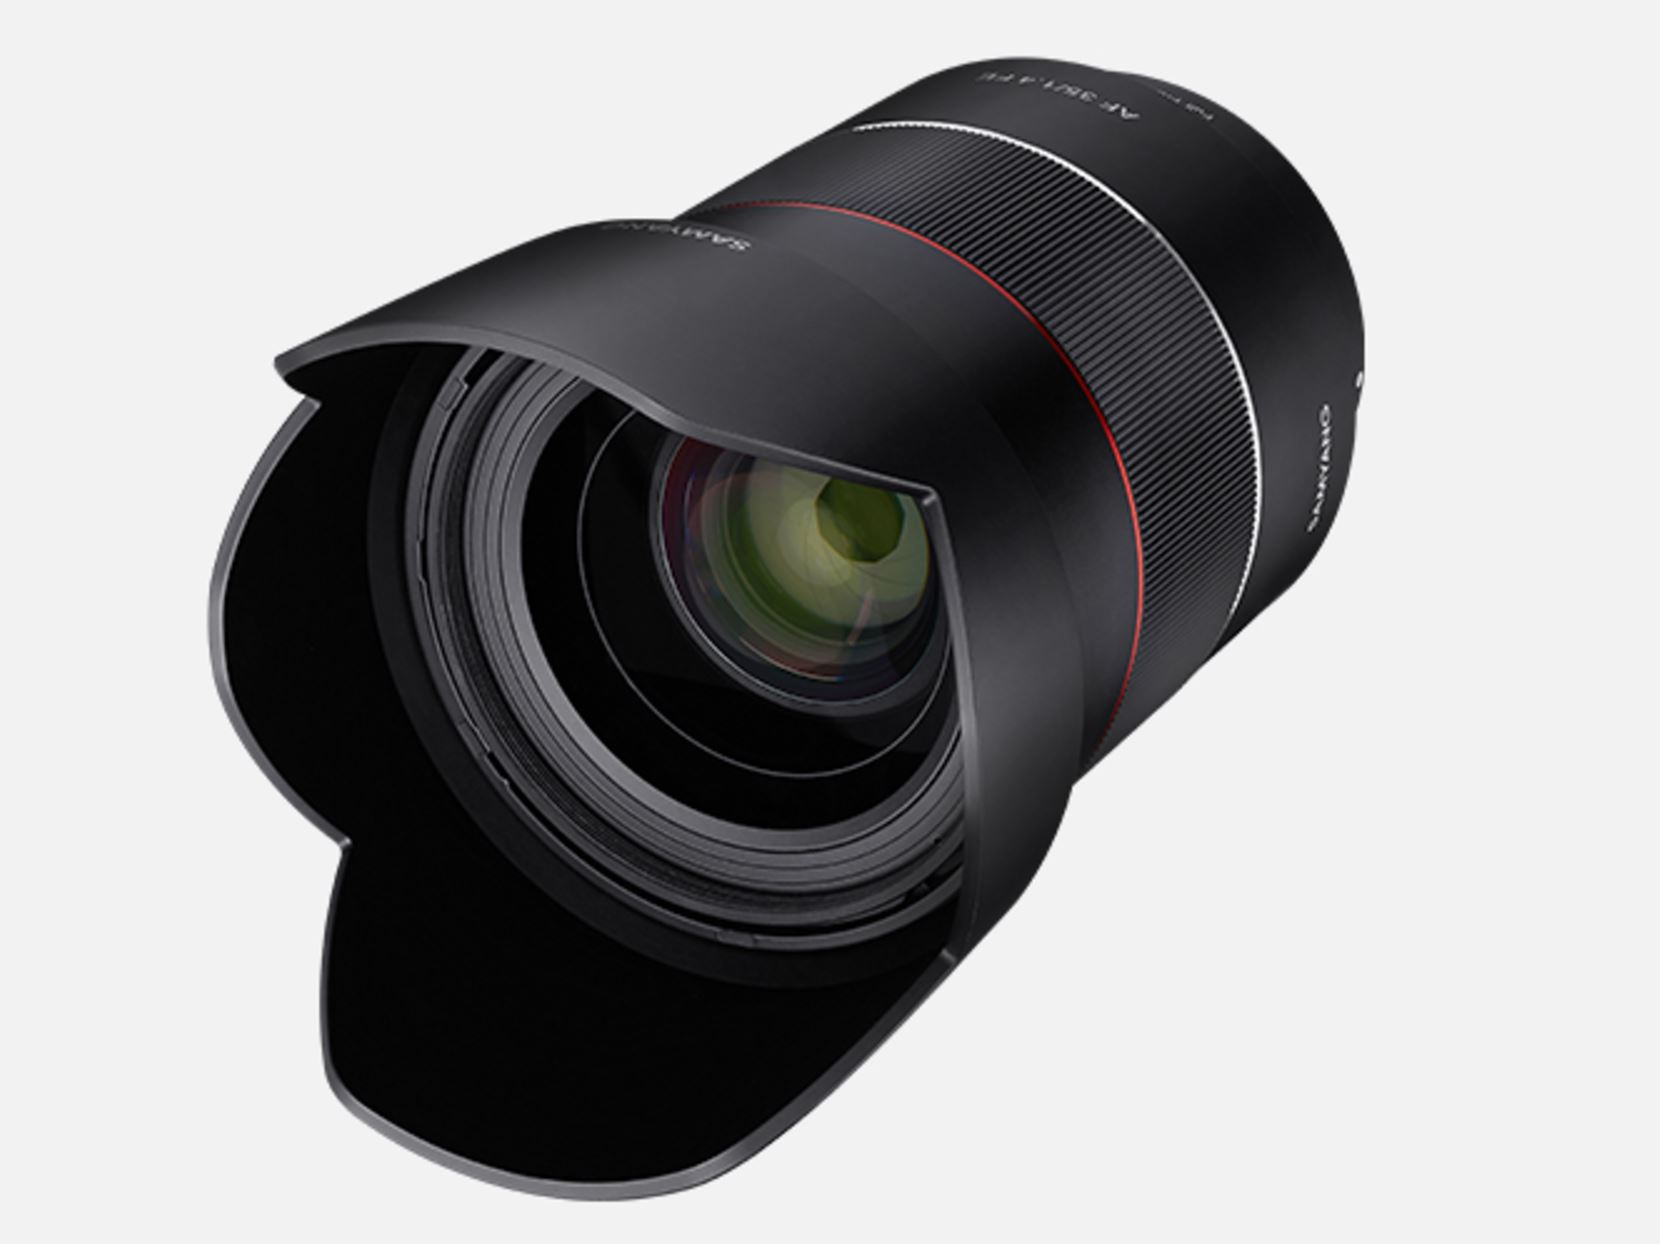 Samyang AF 35mm f/1.4 FE Lens Images and Specs Leaked